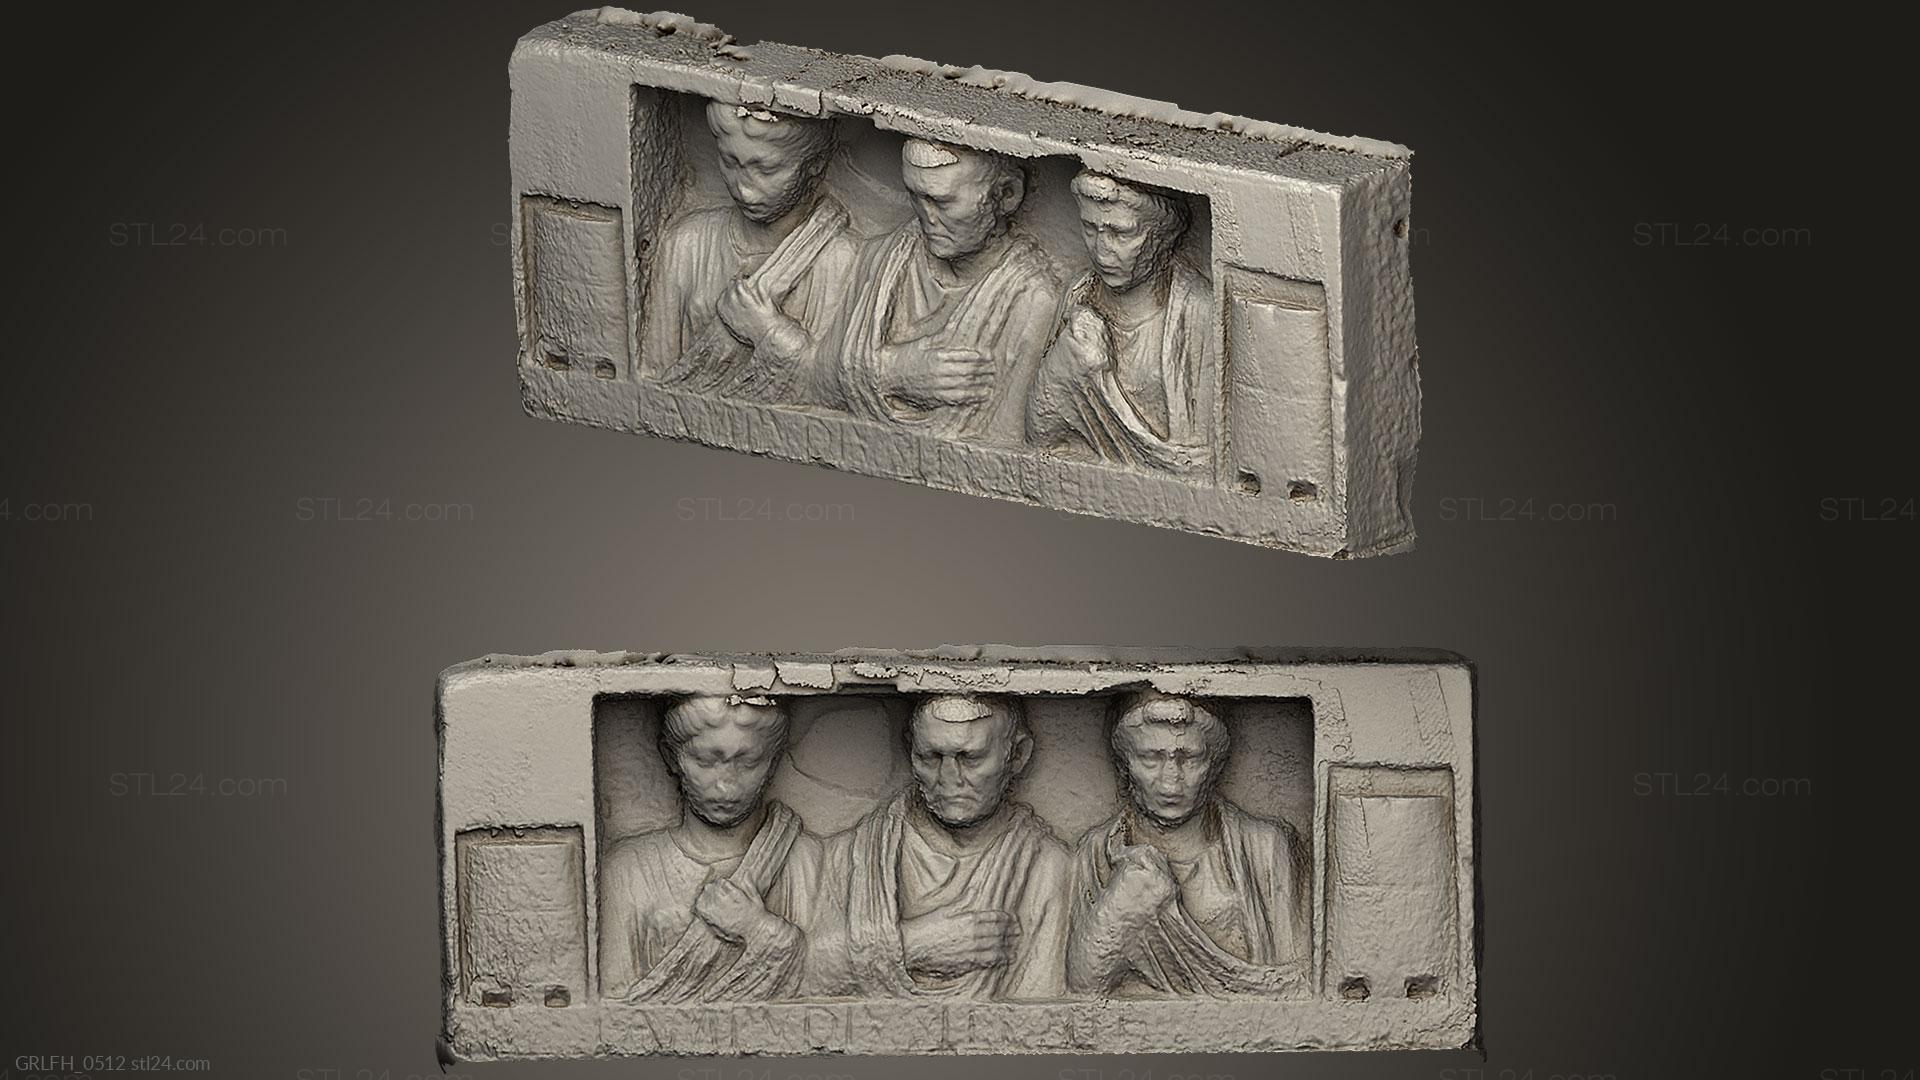 Горельефы и барельефы исторические и религиозные (Каменный погребальный рельеф, GRLFH_0512) 3D модель для ЧПУ станка